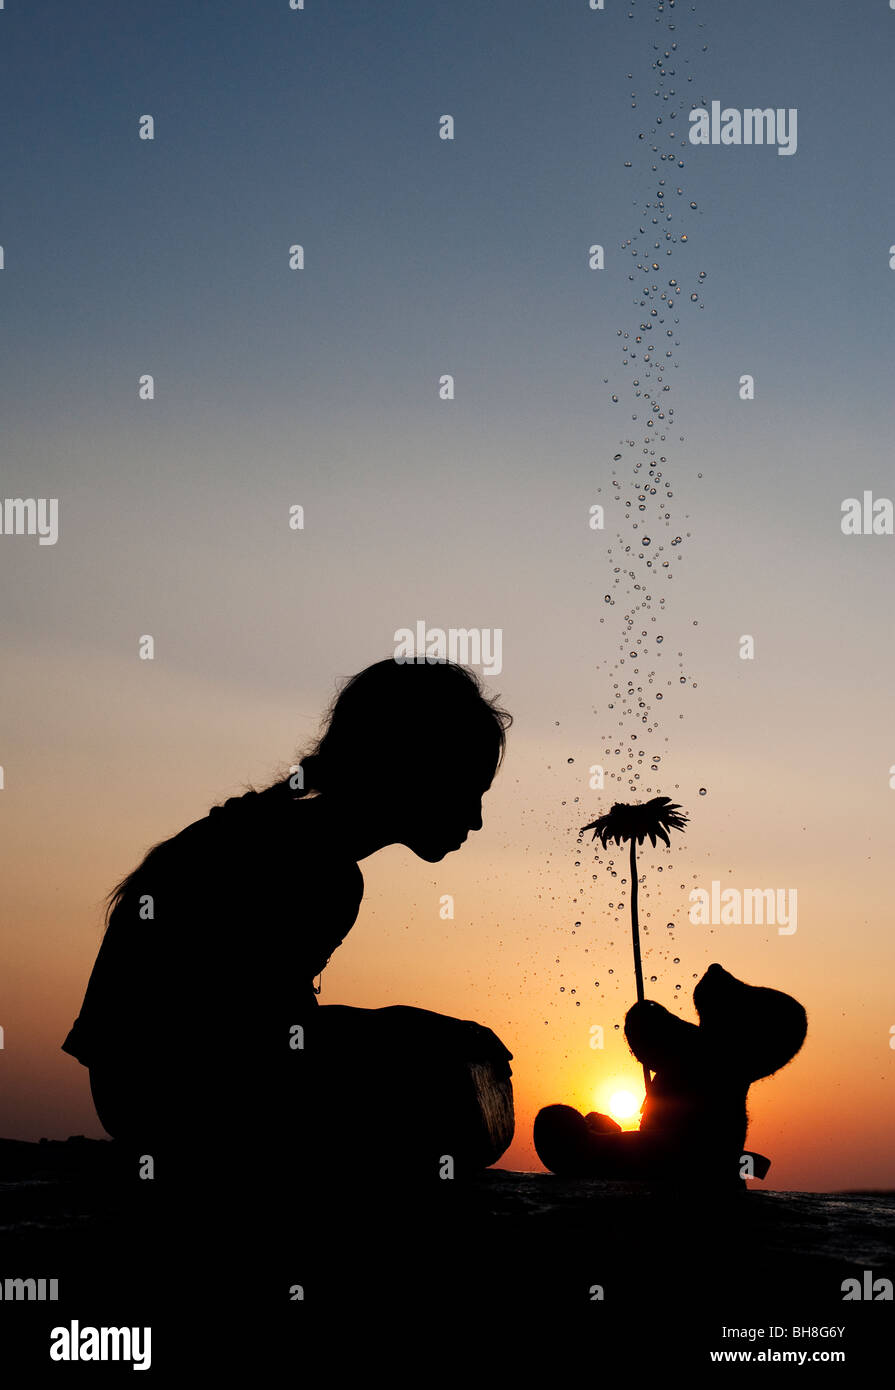 Indian girl et ours tient une fleur au coucher du soleil avec des gouttes d'eau. Silhouette. L'Inde Banque D'Images